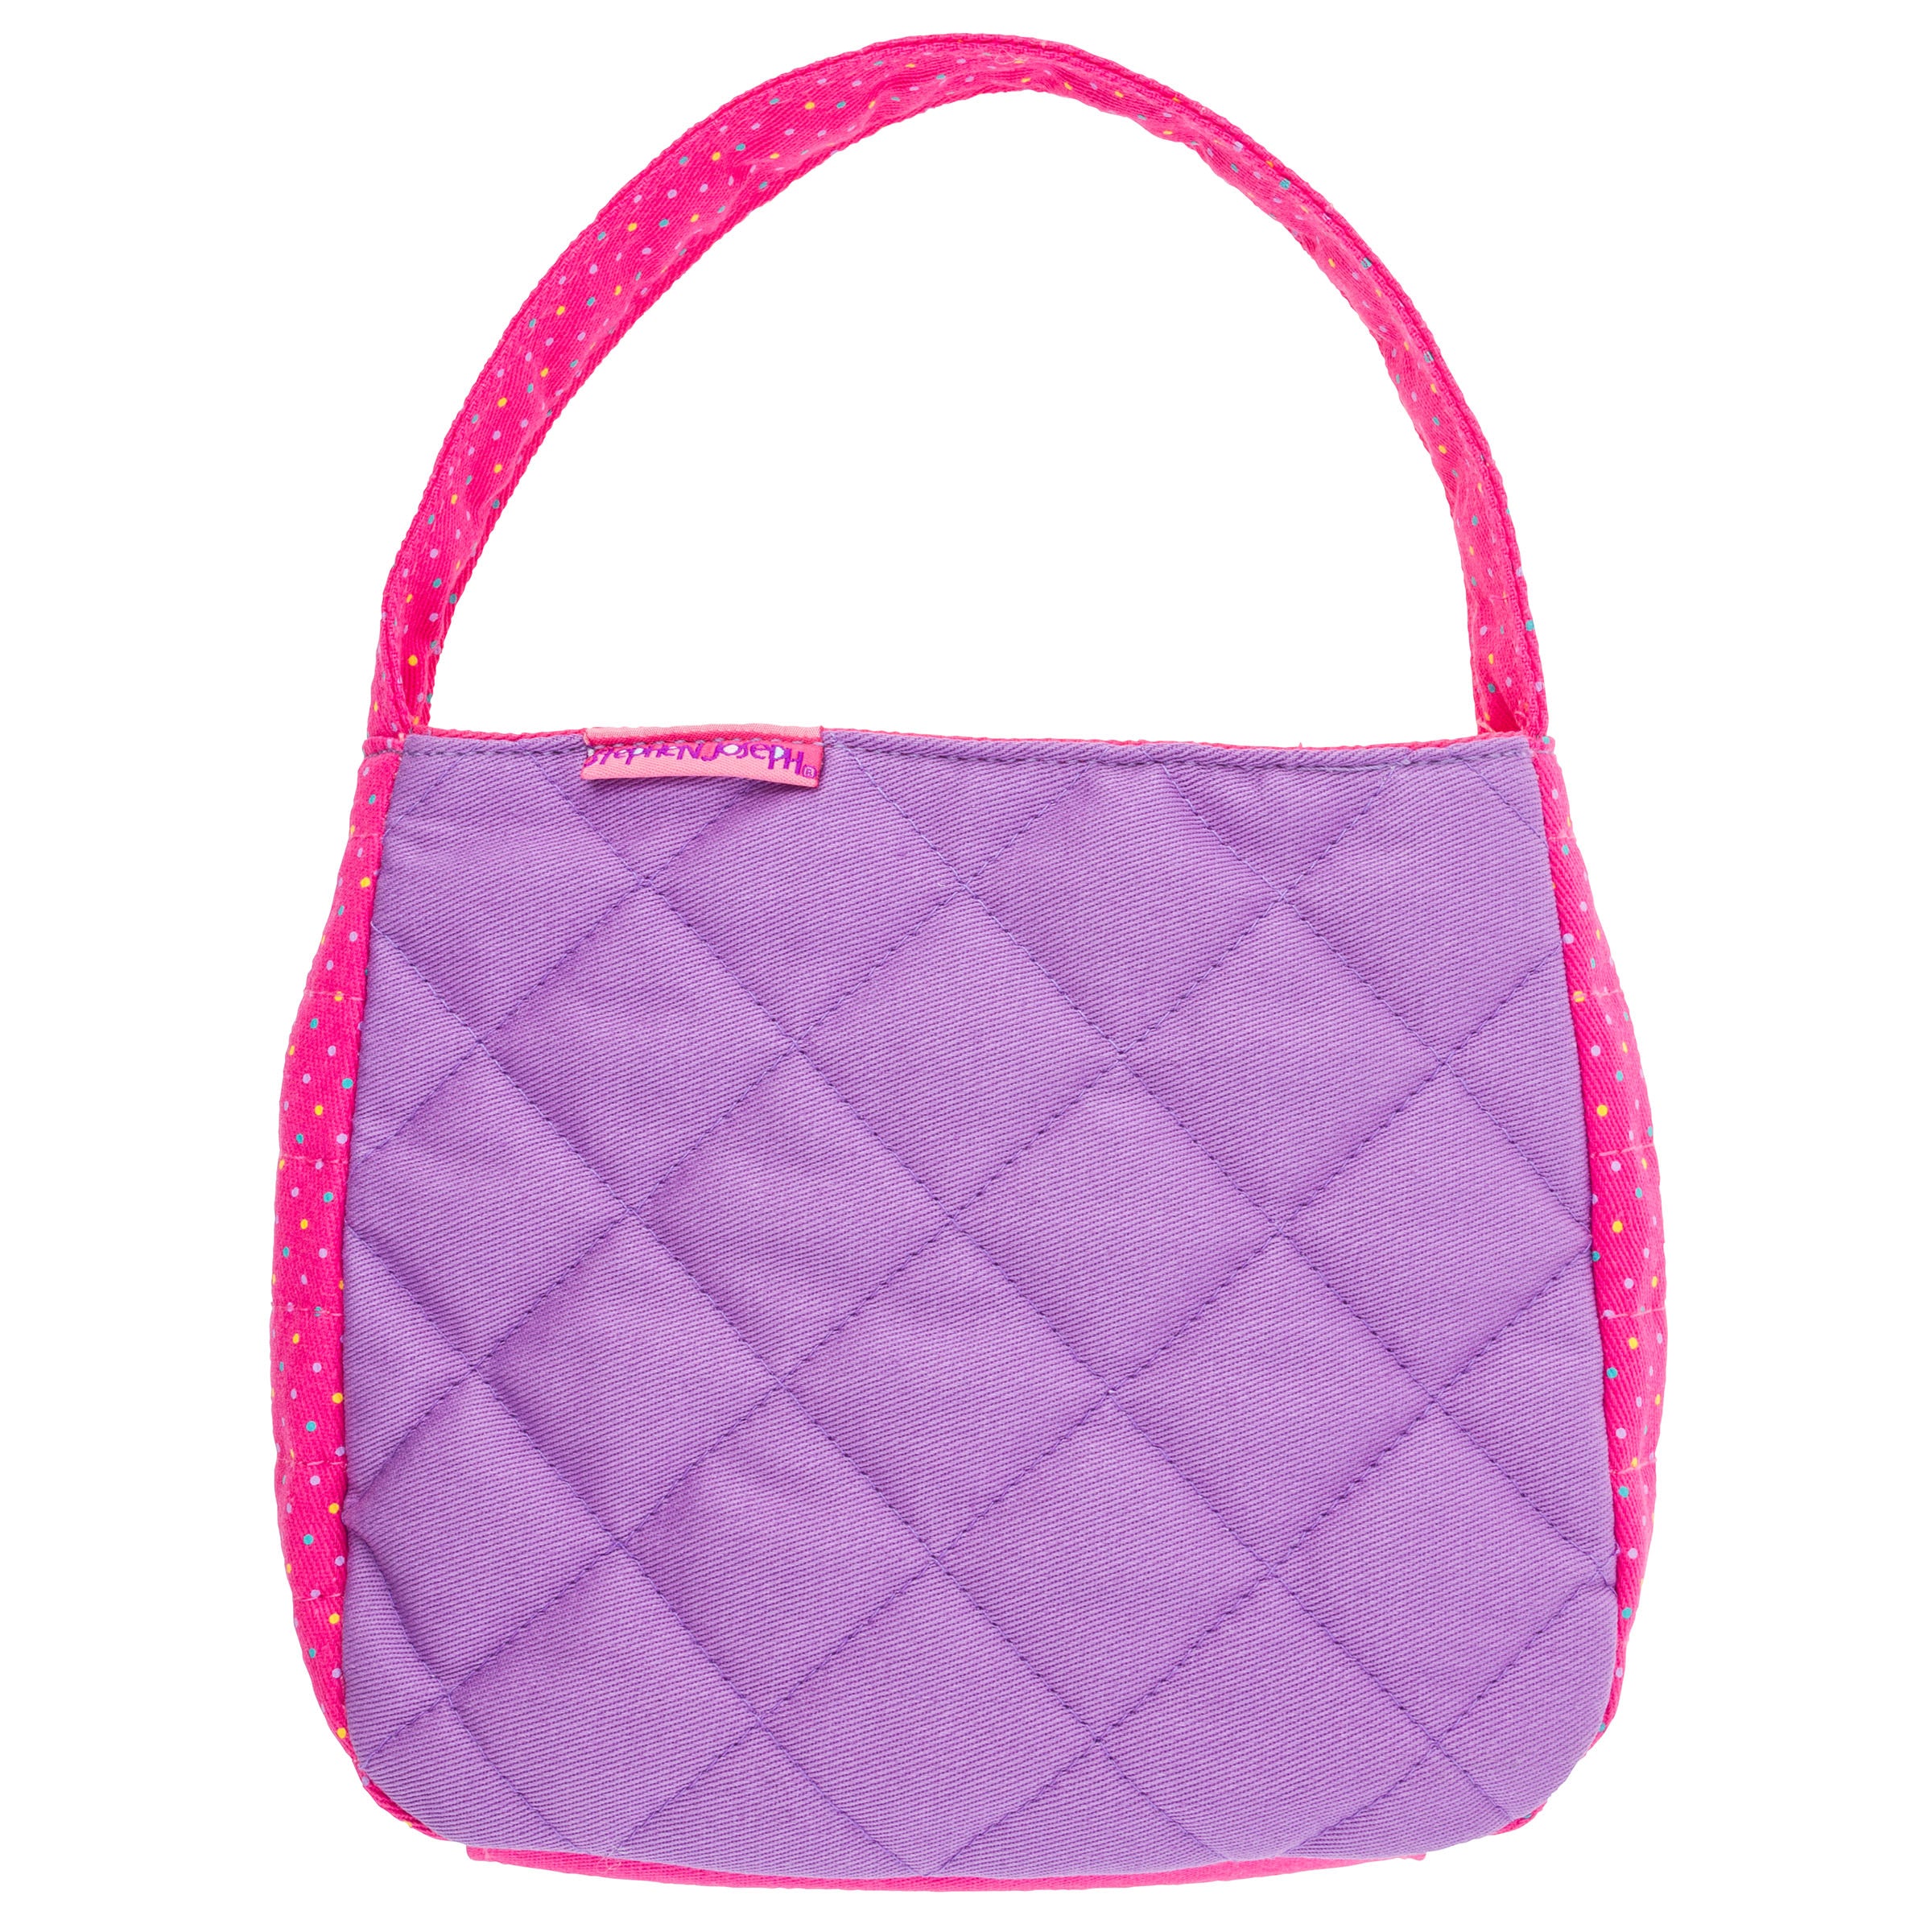 Little Girls Shoulder Bag, Cute Rabbit Ear Cross Body Bag Purse Adjustable  Strap Massenger Handbag for Kids, Toddler, Girls(Violet) - Walmart.com